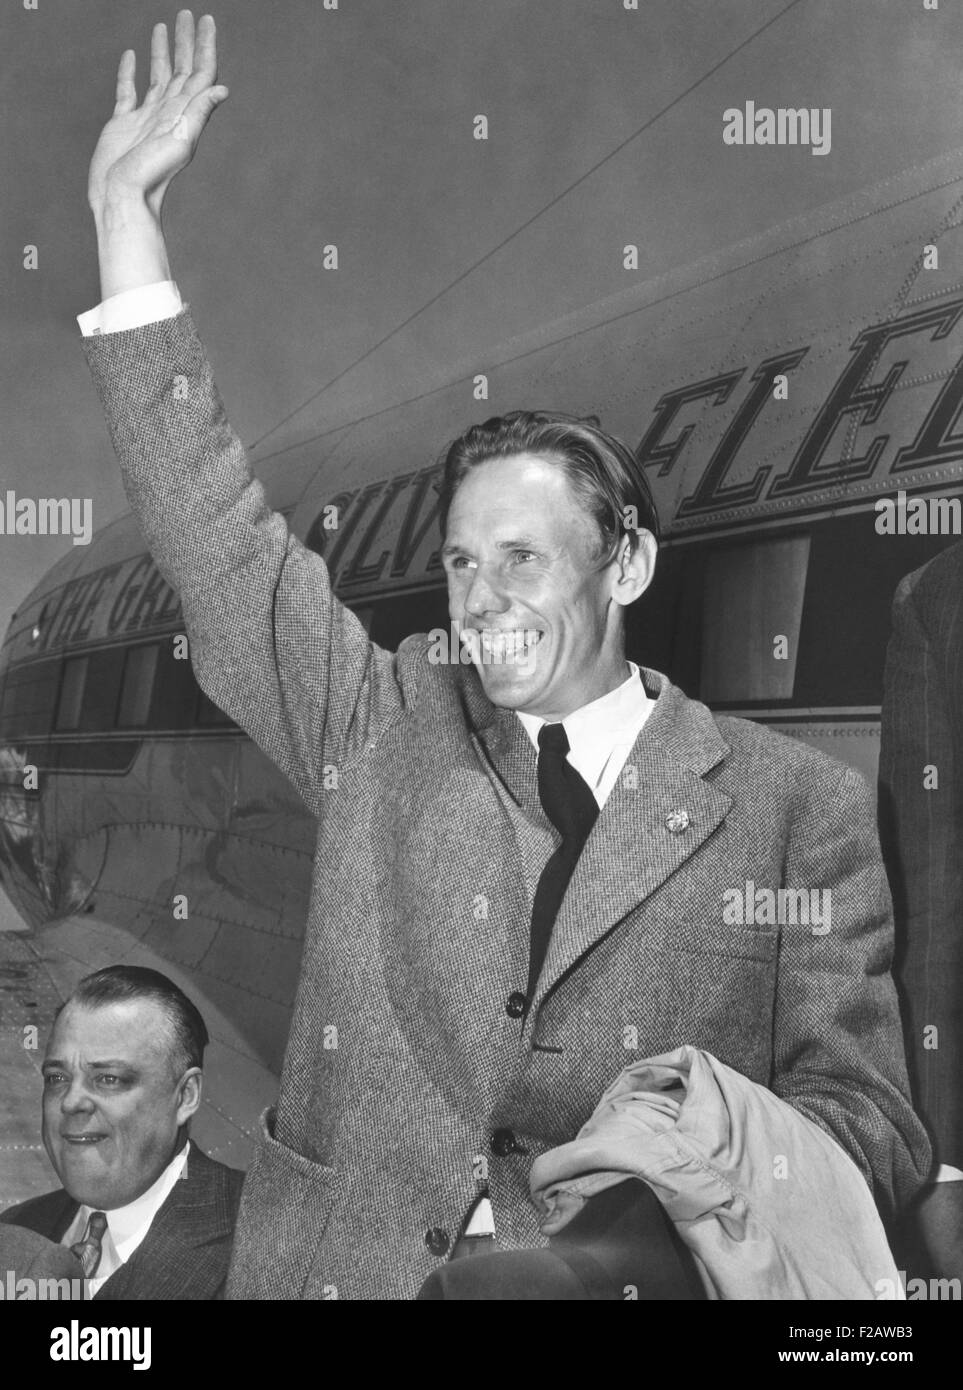 Gunder Hagg, svedese runner con sette record mondiali, arrivati all'Aeroporto LaGuardia. Il 6 giugno 1943. Ha viaggiato dalla posizione di folle alla Svezia di competere negli Stati Uniti via soddisfa. Due anni più tardi, Hagg correva un miglio in 4:01.4 secondi a Malmo, Svezia nel 1945. Il record detenuto fino a quando non viene interrotta da Roger Bannister a Oxford nel 1954. (CSU 2015 11 1442) Foto Stock